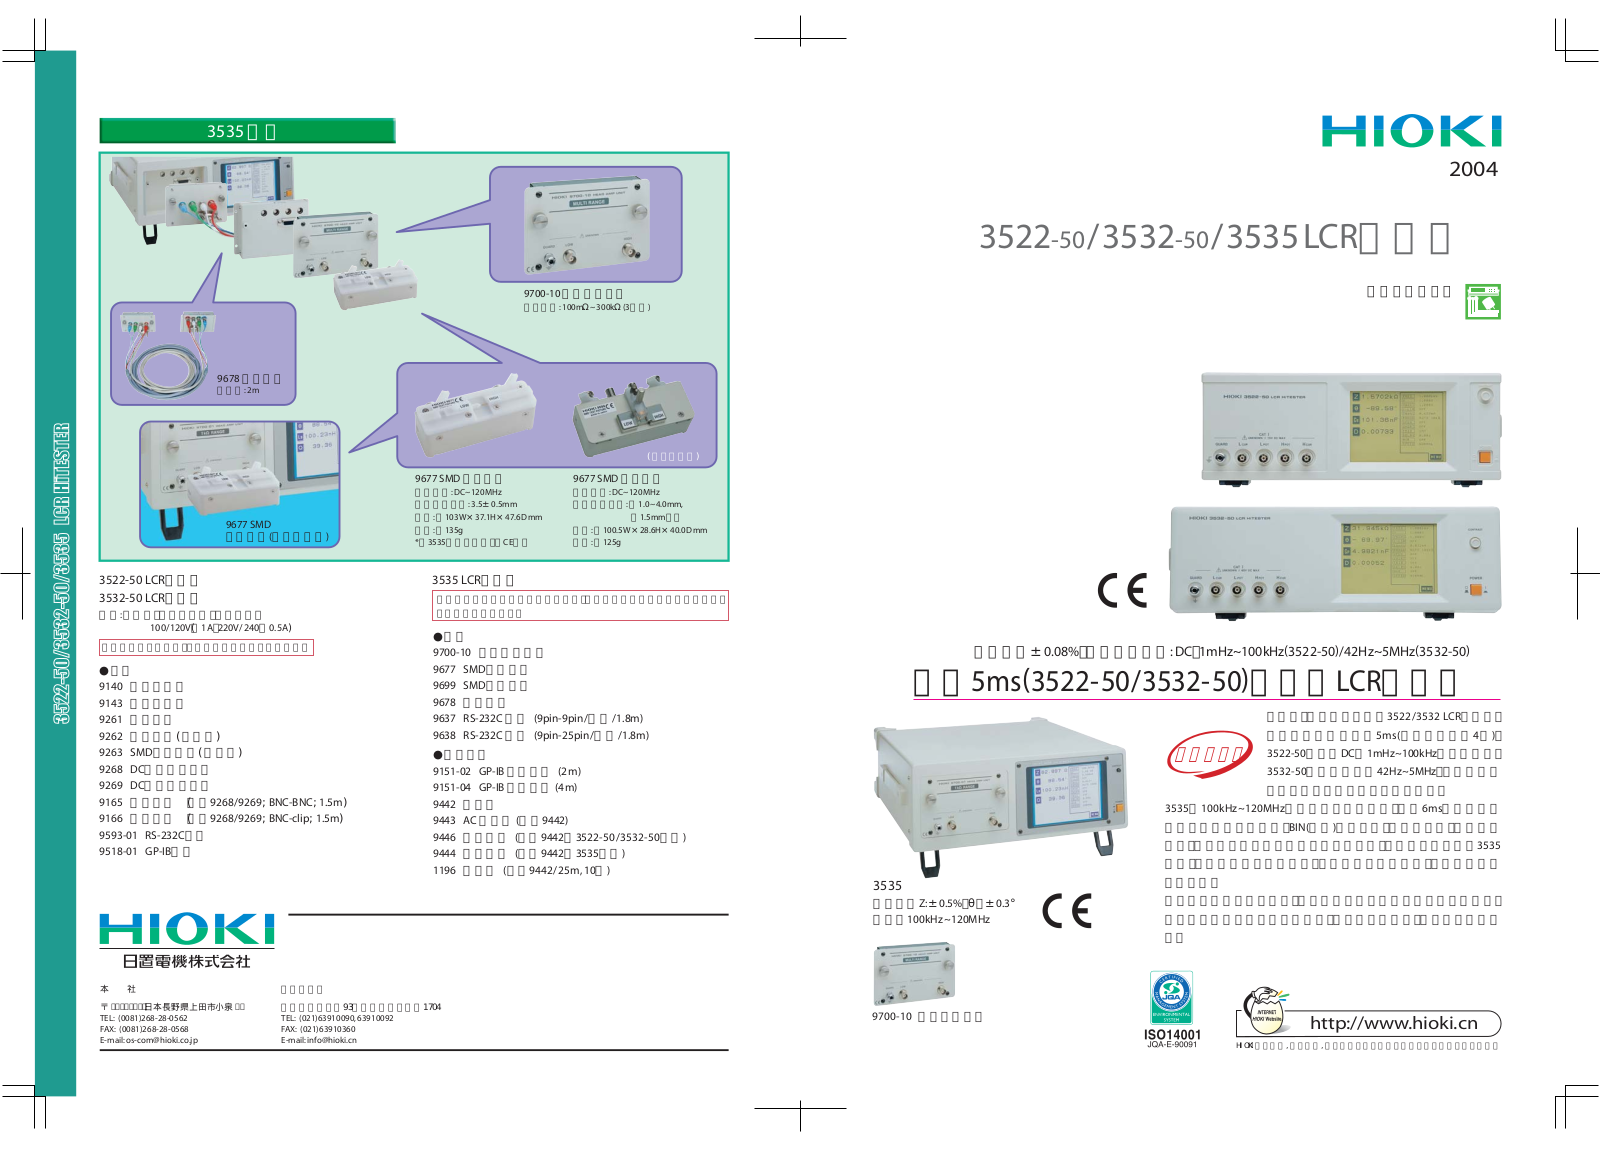 HIOKI 3522-50, 3532-50, 3535 User Manual